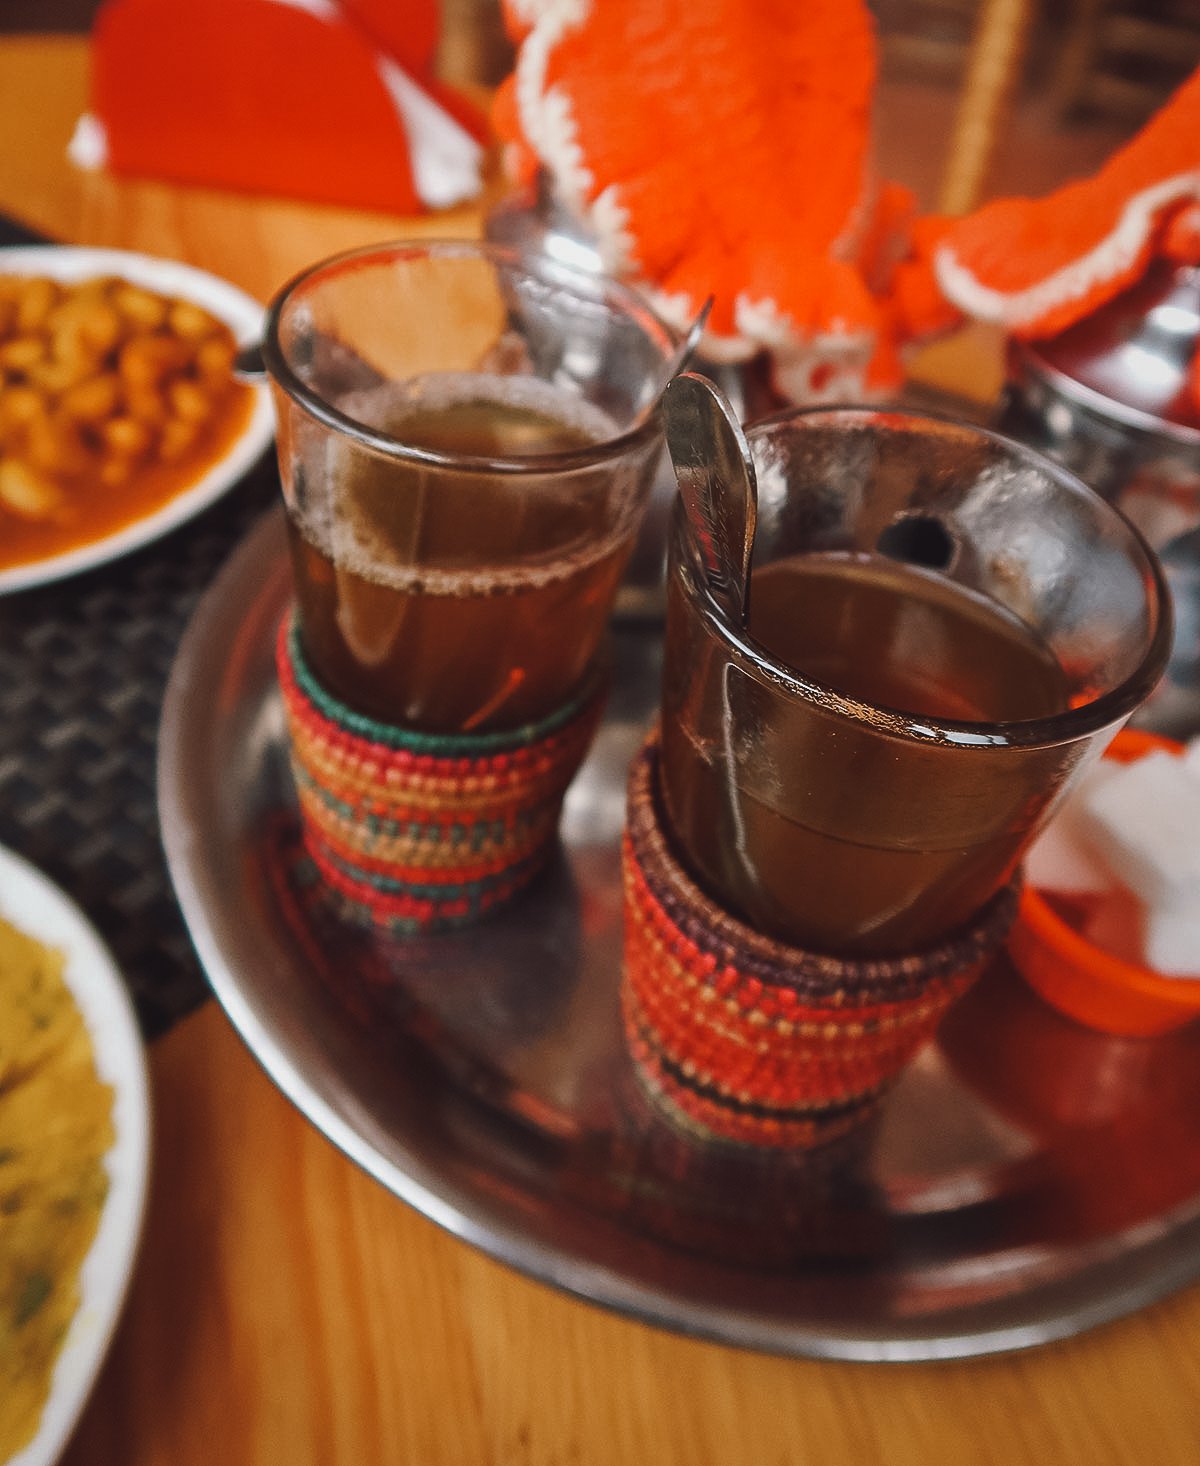 Mint tea at a restaurant in Marrakech